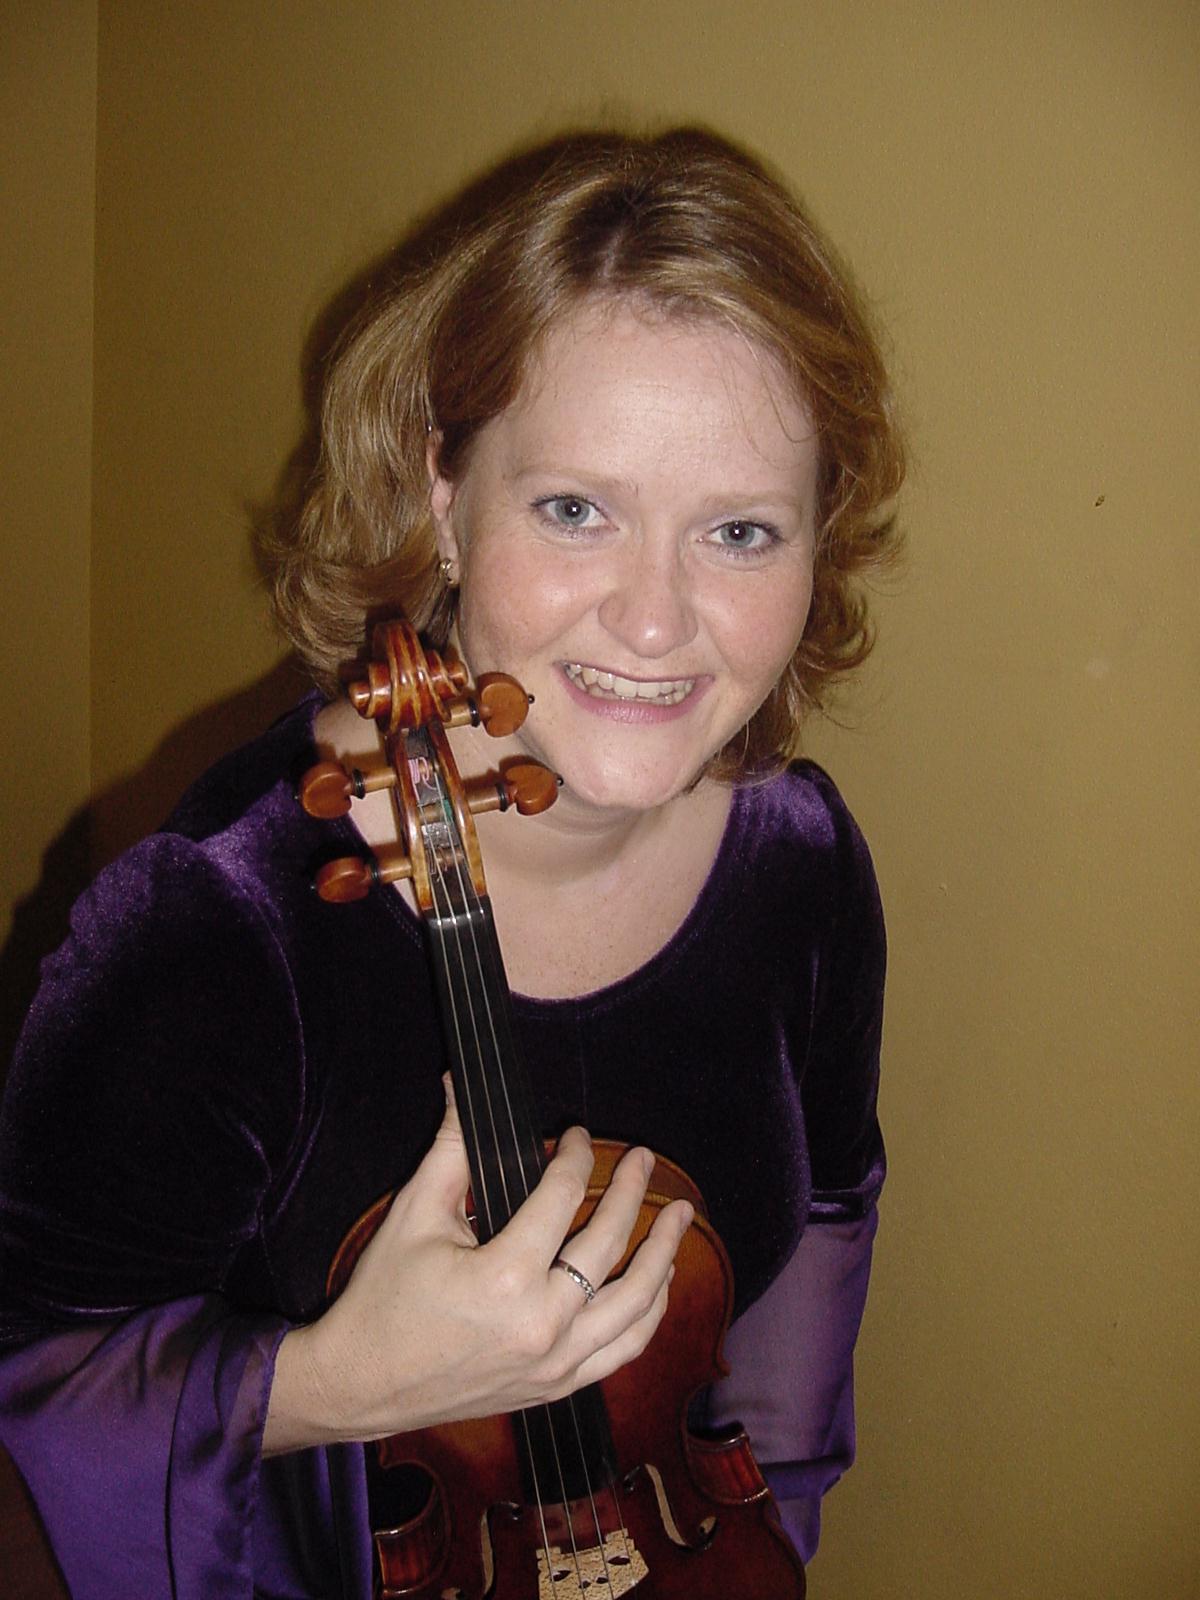  Marianne Thorsen, 2013 